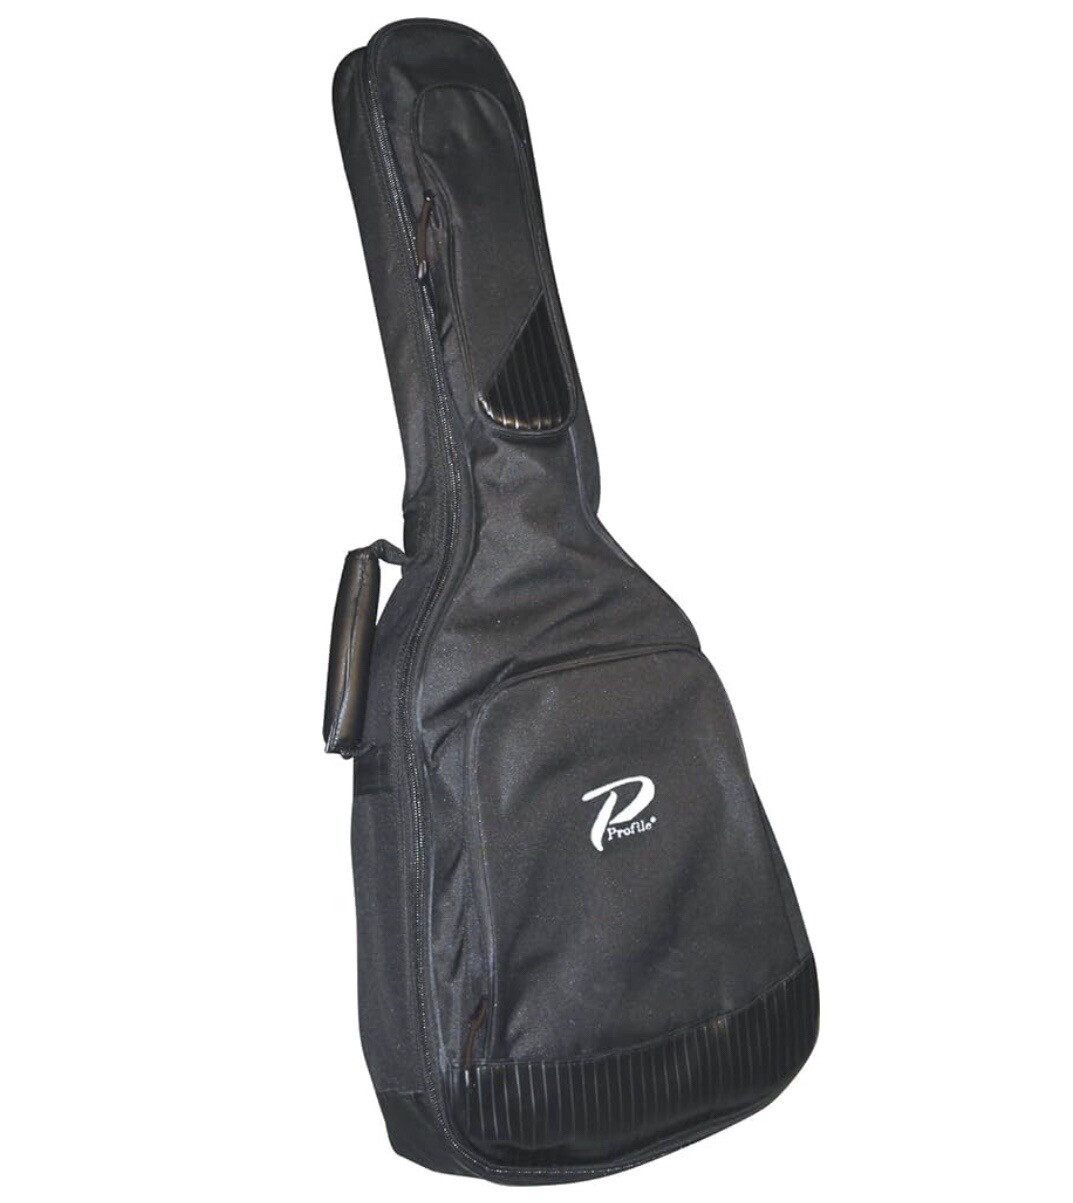 Profile Roksaak 36” Classical Guitar Gig Bag - TCB10